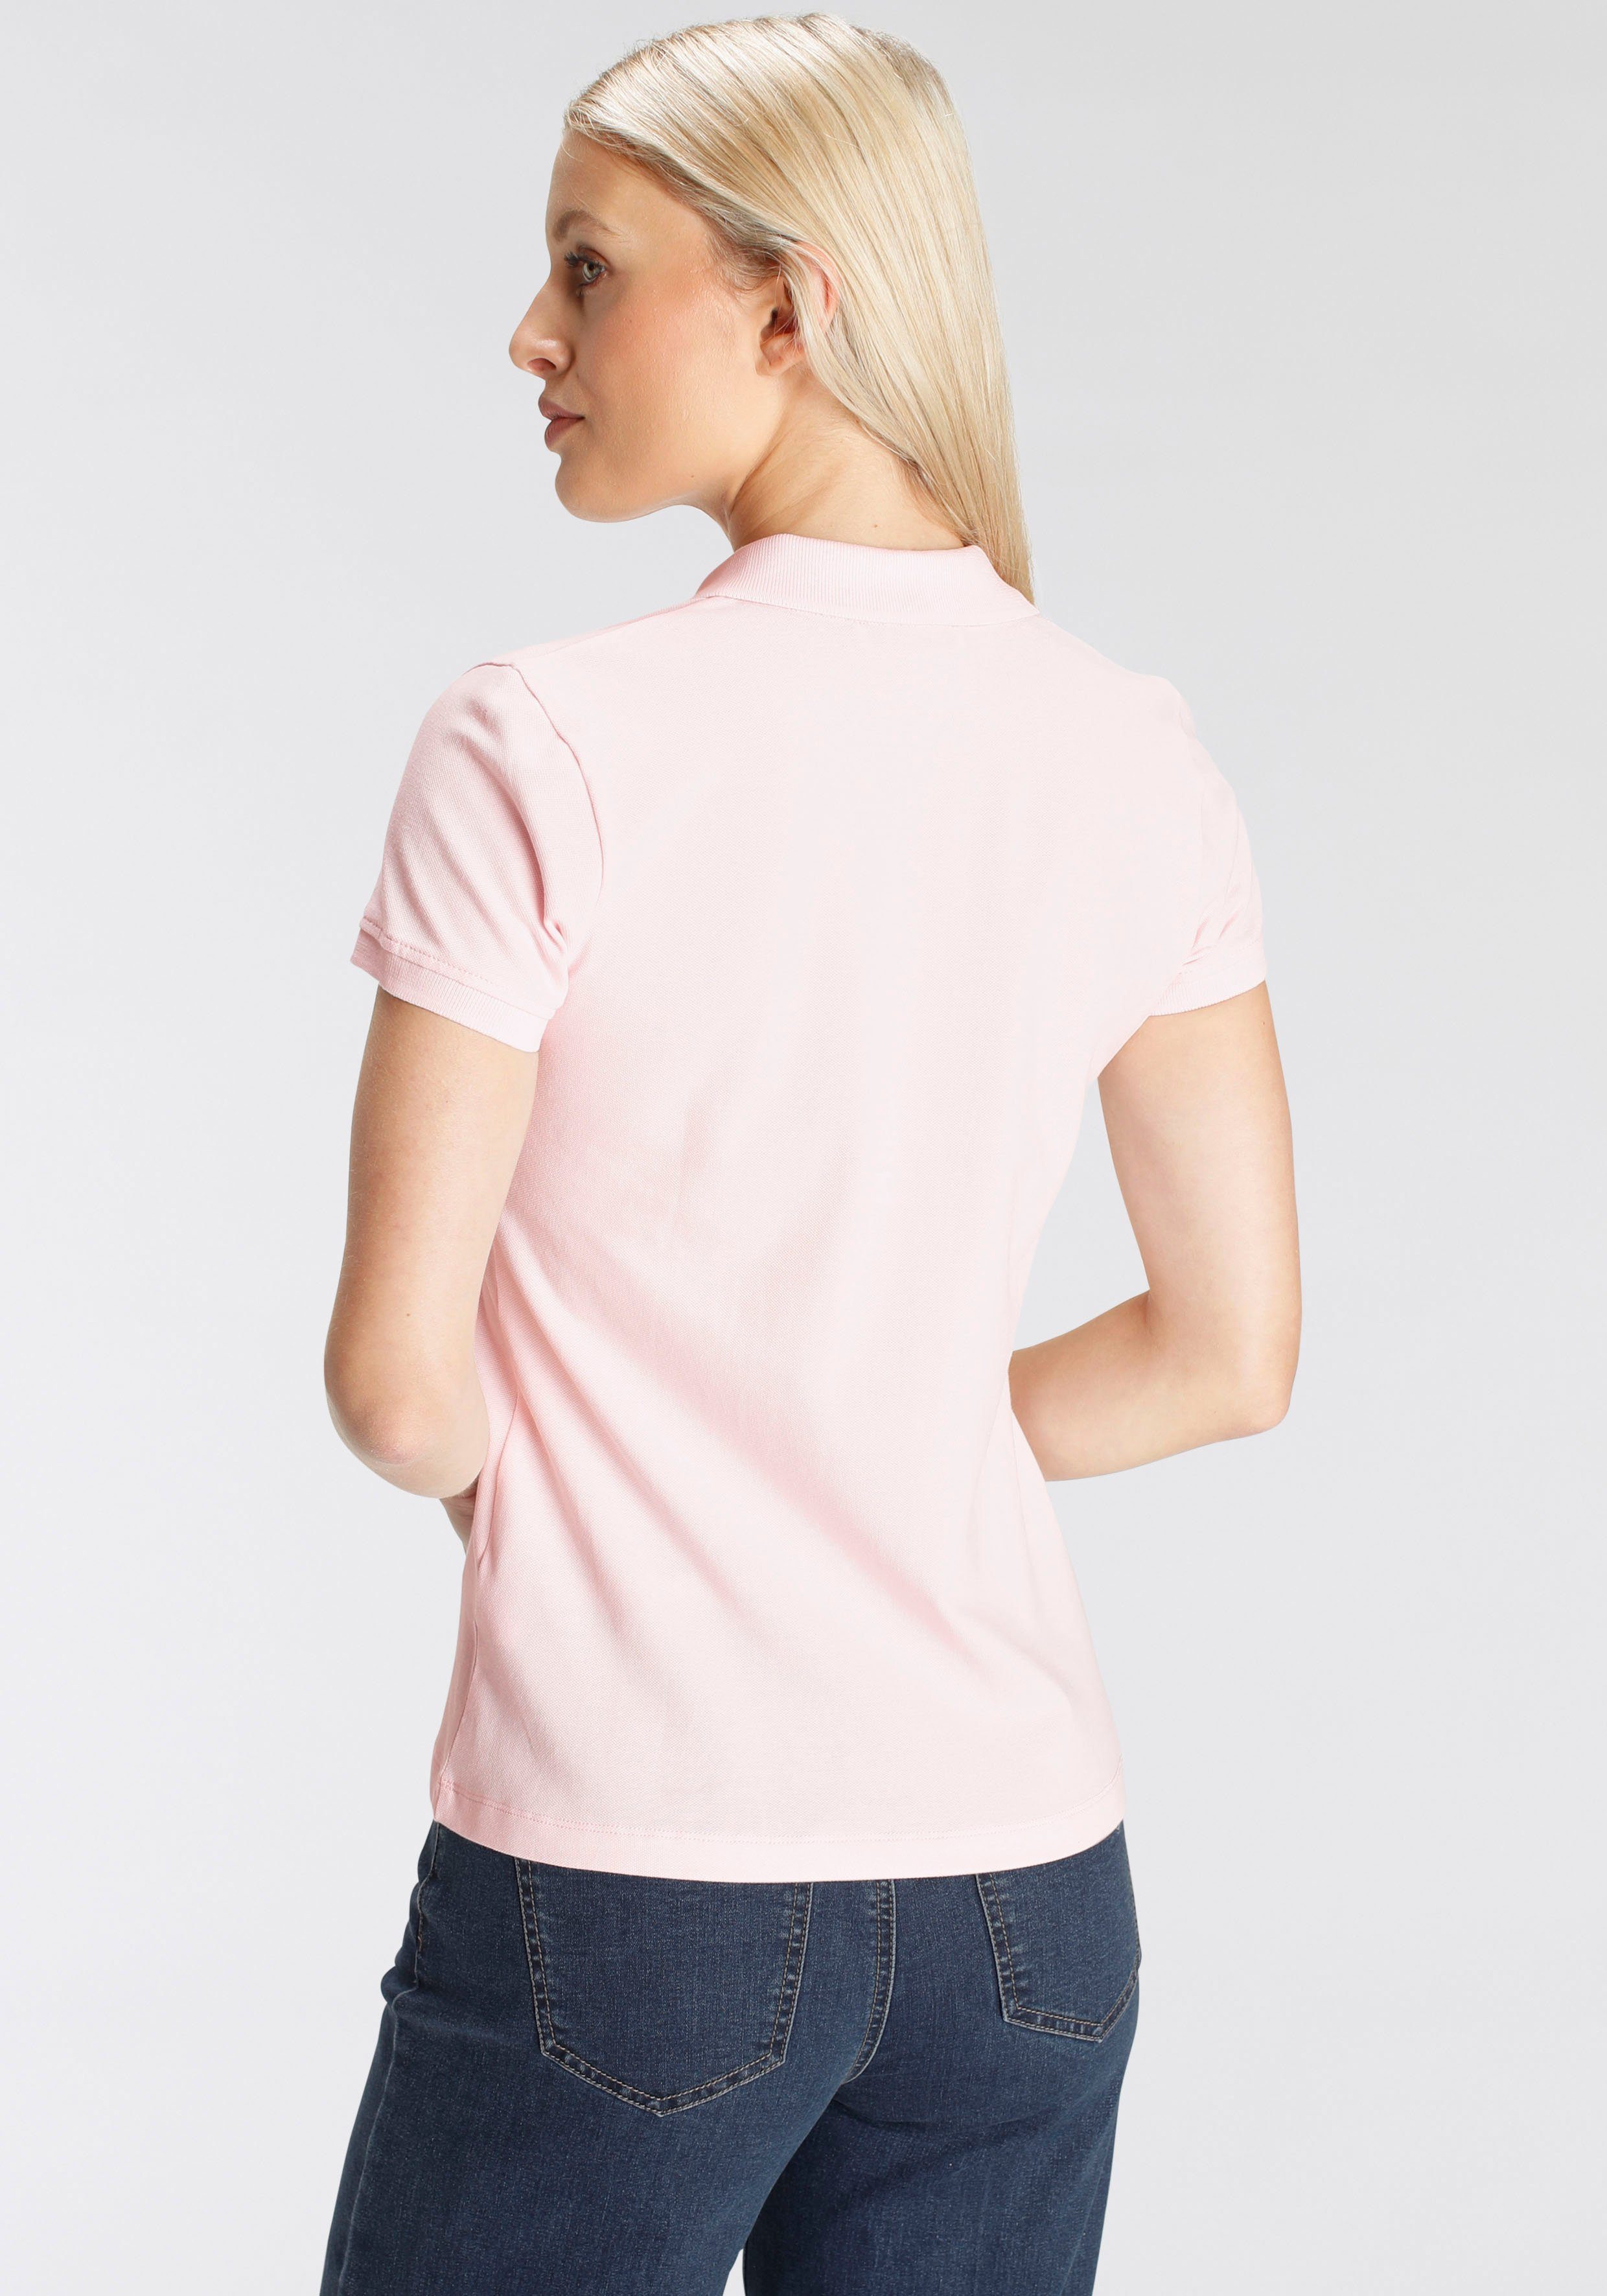 DELMAO Poloshirt in MARKE! Farben in klassischer verschiedenen - rosa Form NEUE